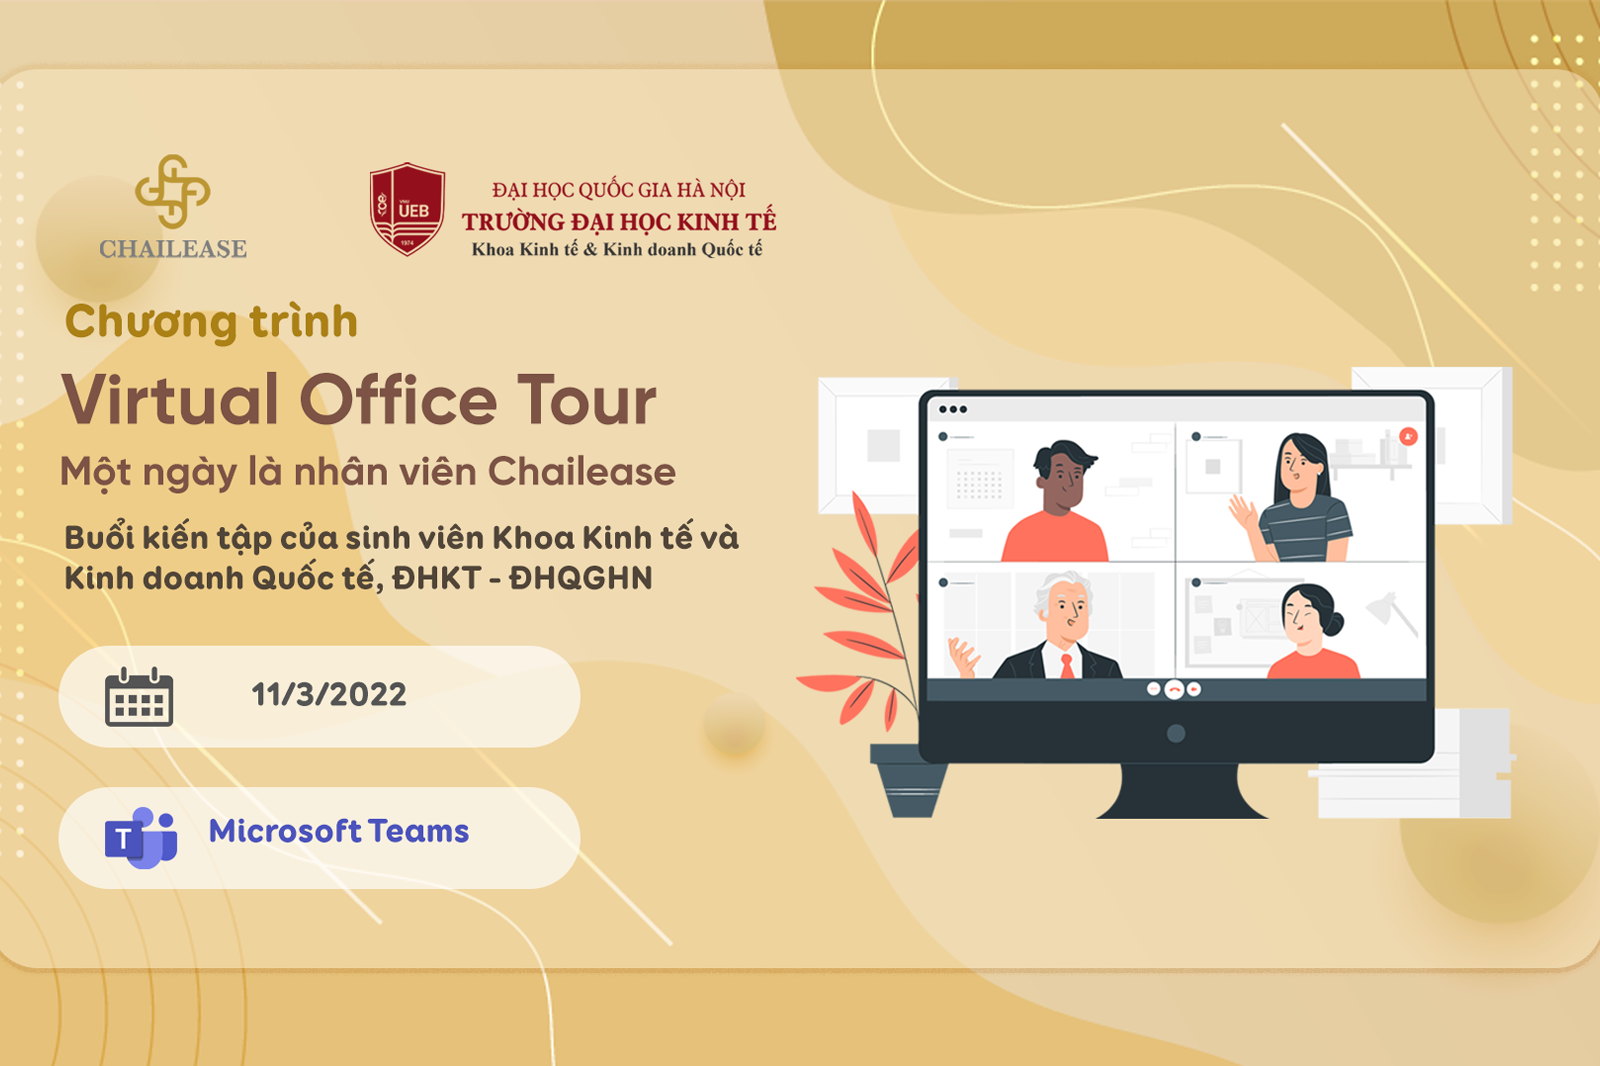  Virtual Office Tour - Chương trình kiến tập trải nghiệm một ngày tại công ty đa quốc gia Chailease